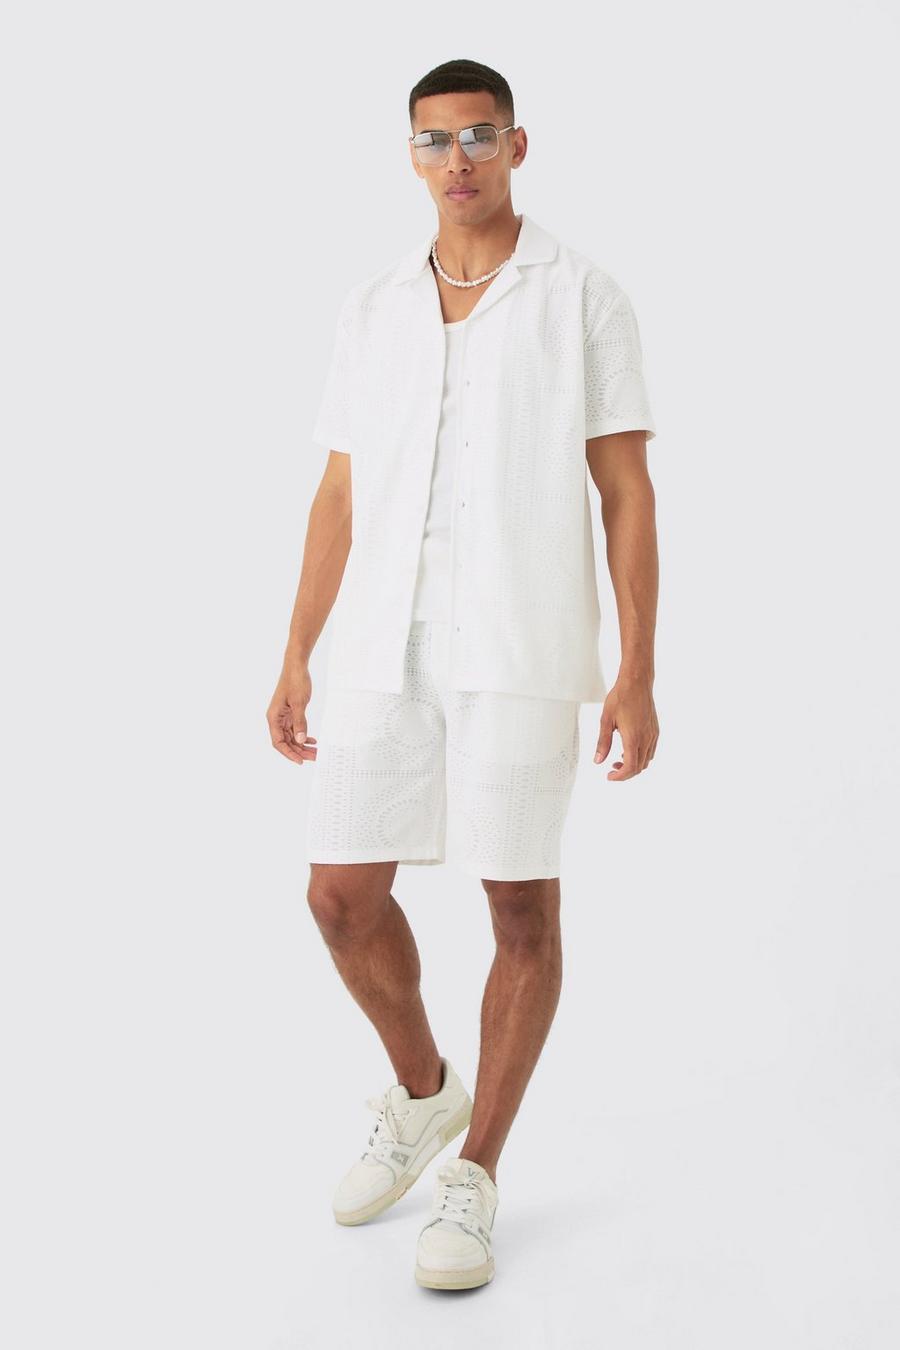 White Oversized Revere Stretch Broderie Shirt & Short Set